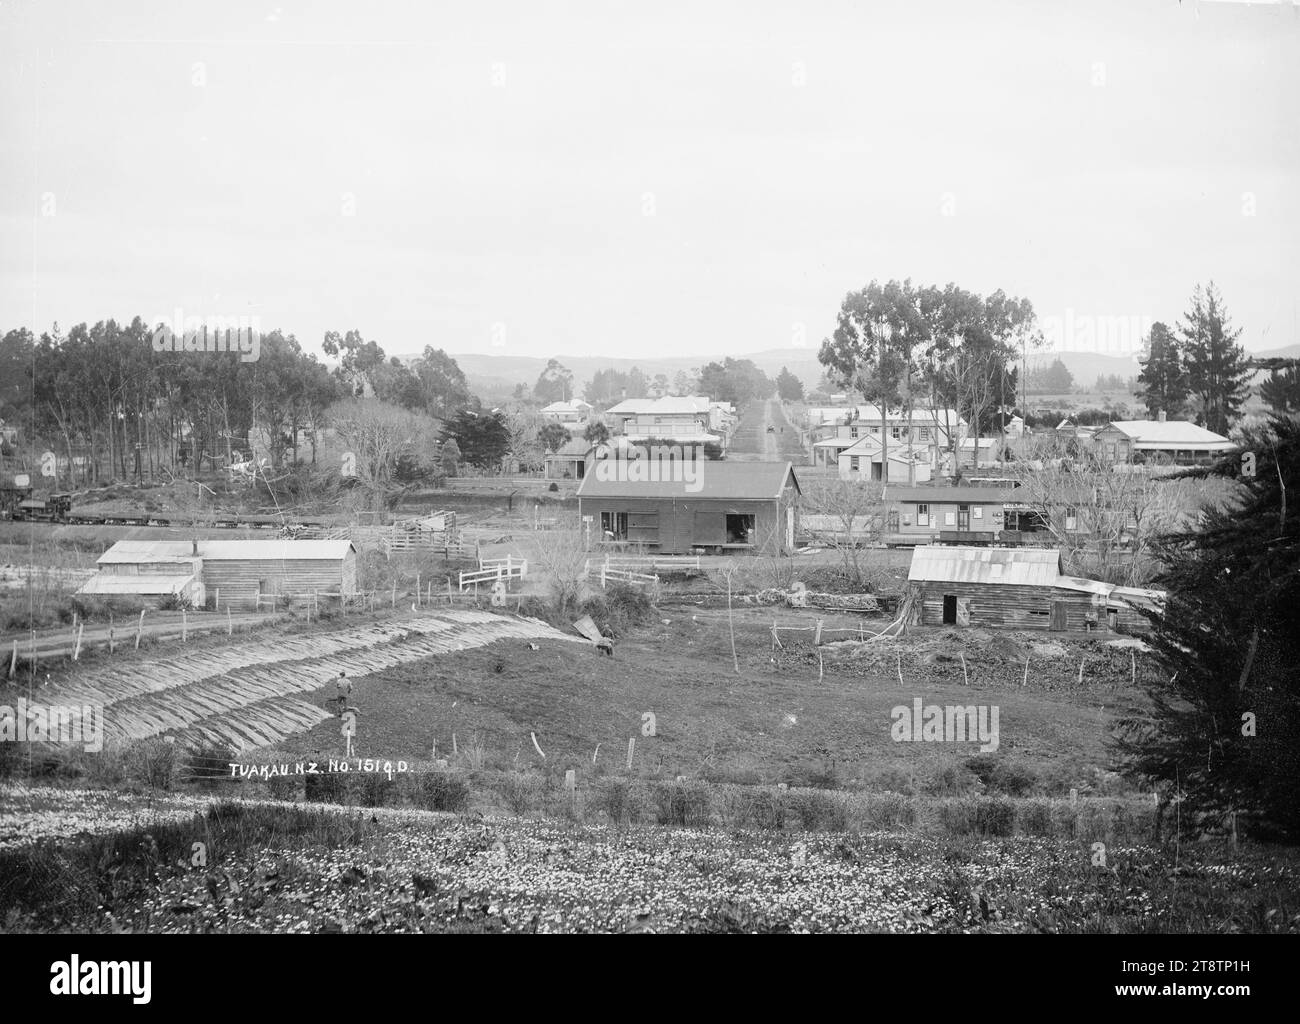 Tuakau Township, Tuakau Township, möglicherweise zwischen 1910 und 1930. Im Vordergrund ist die Flachsfaser zum Trocknen und Bleichen ausgelegt. In der Mitte befinden sich der Bahnhof und die Bahnhöfe, mit der Hauptstraße in der Ferne. Die Creamery kann man in der Nähe der hohen Bäume in der Mitte sehen Stockfoto